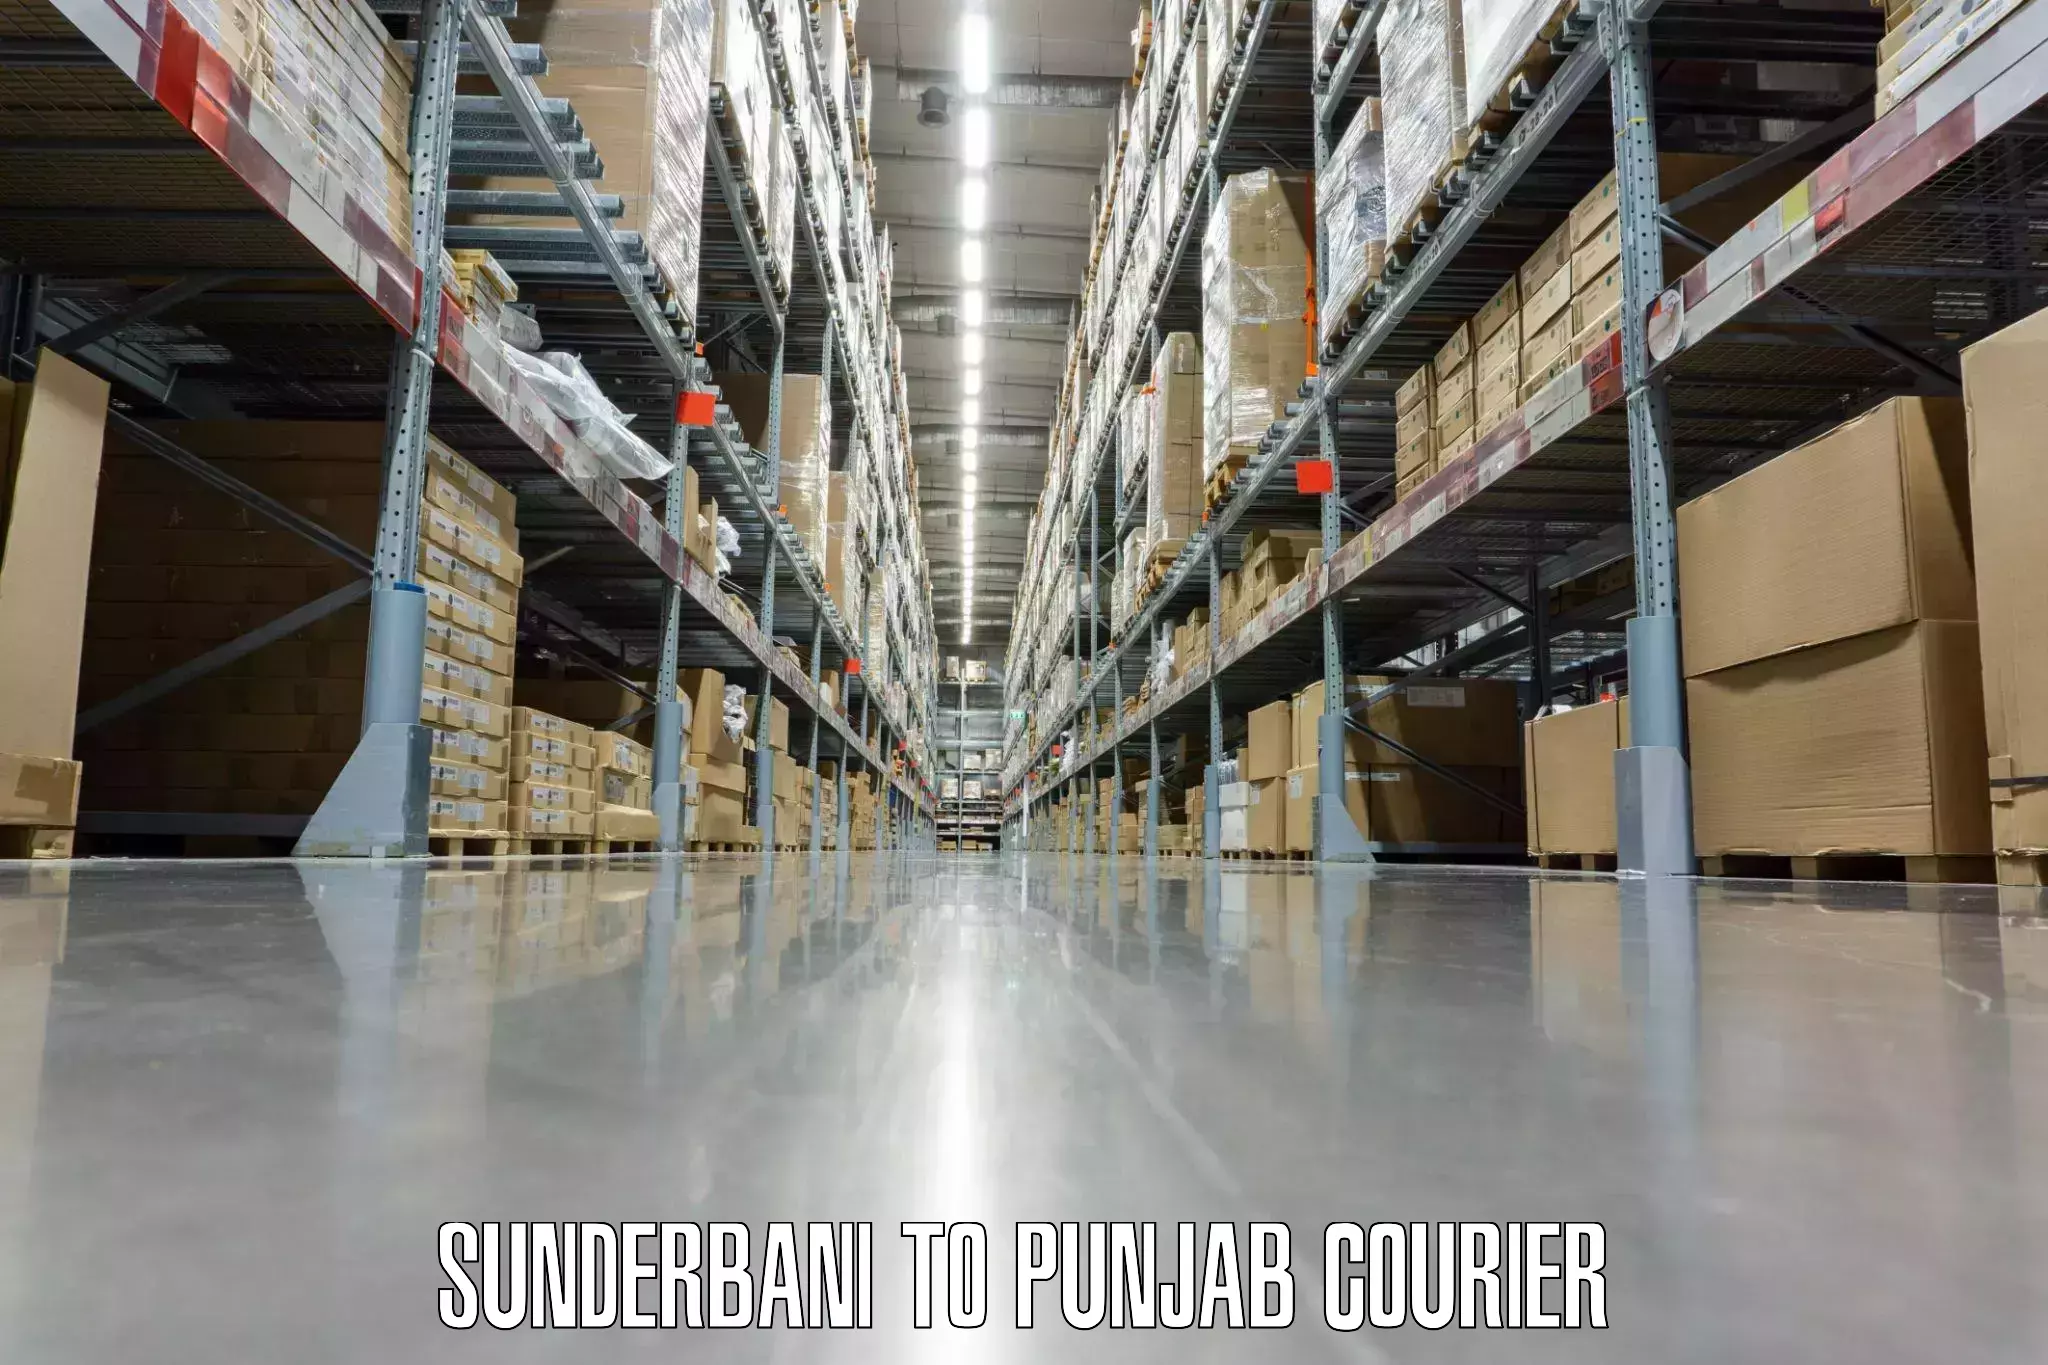 Overnight luggage courier Sunderbani to Mandi Gobindgarh